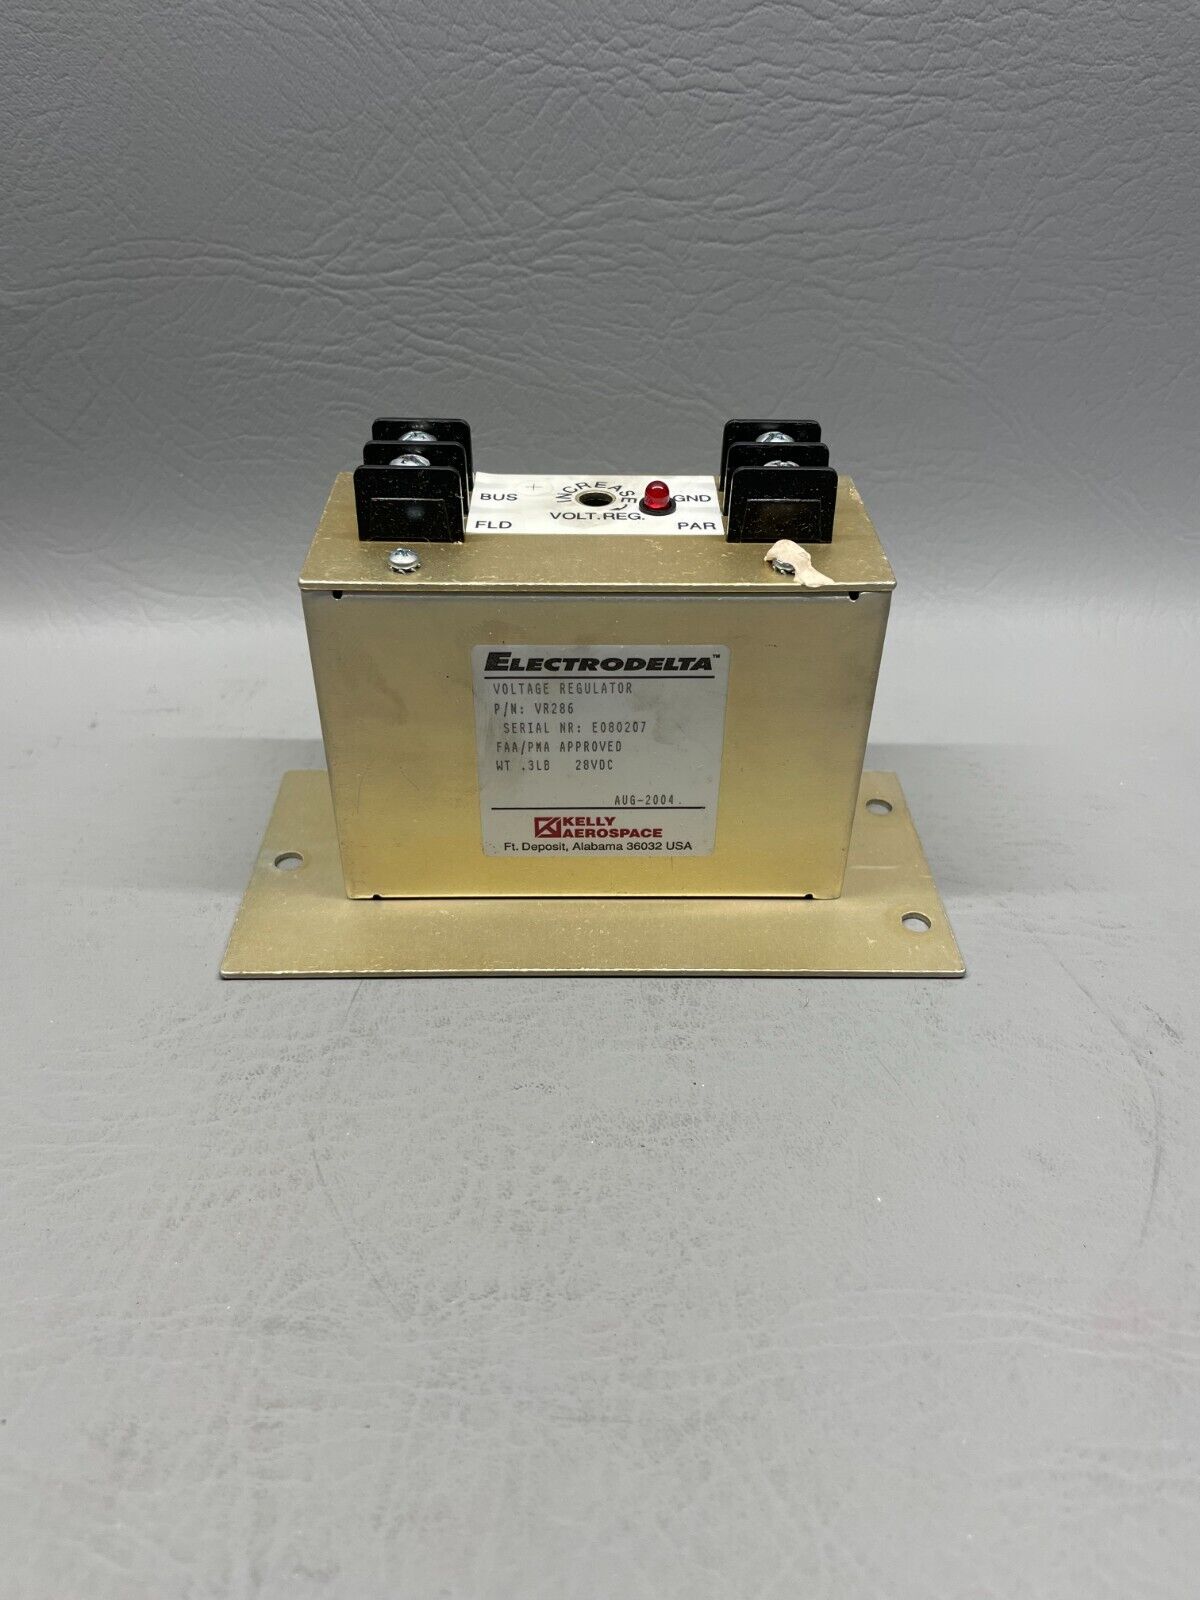 Electrodelta 28V Aircraft Voltage Regulator P/N VR286